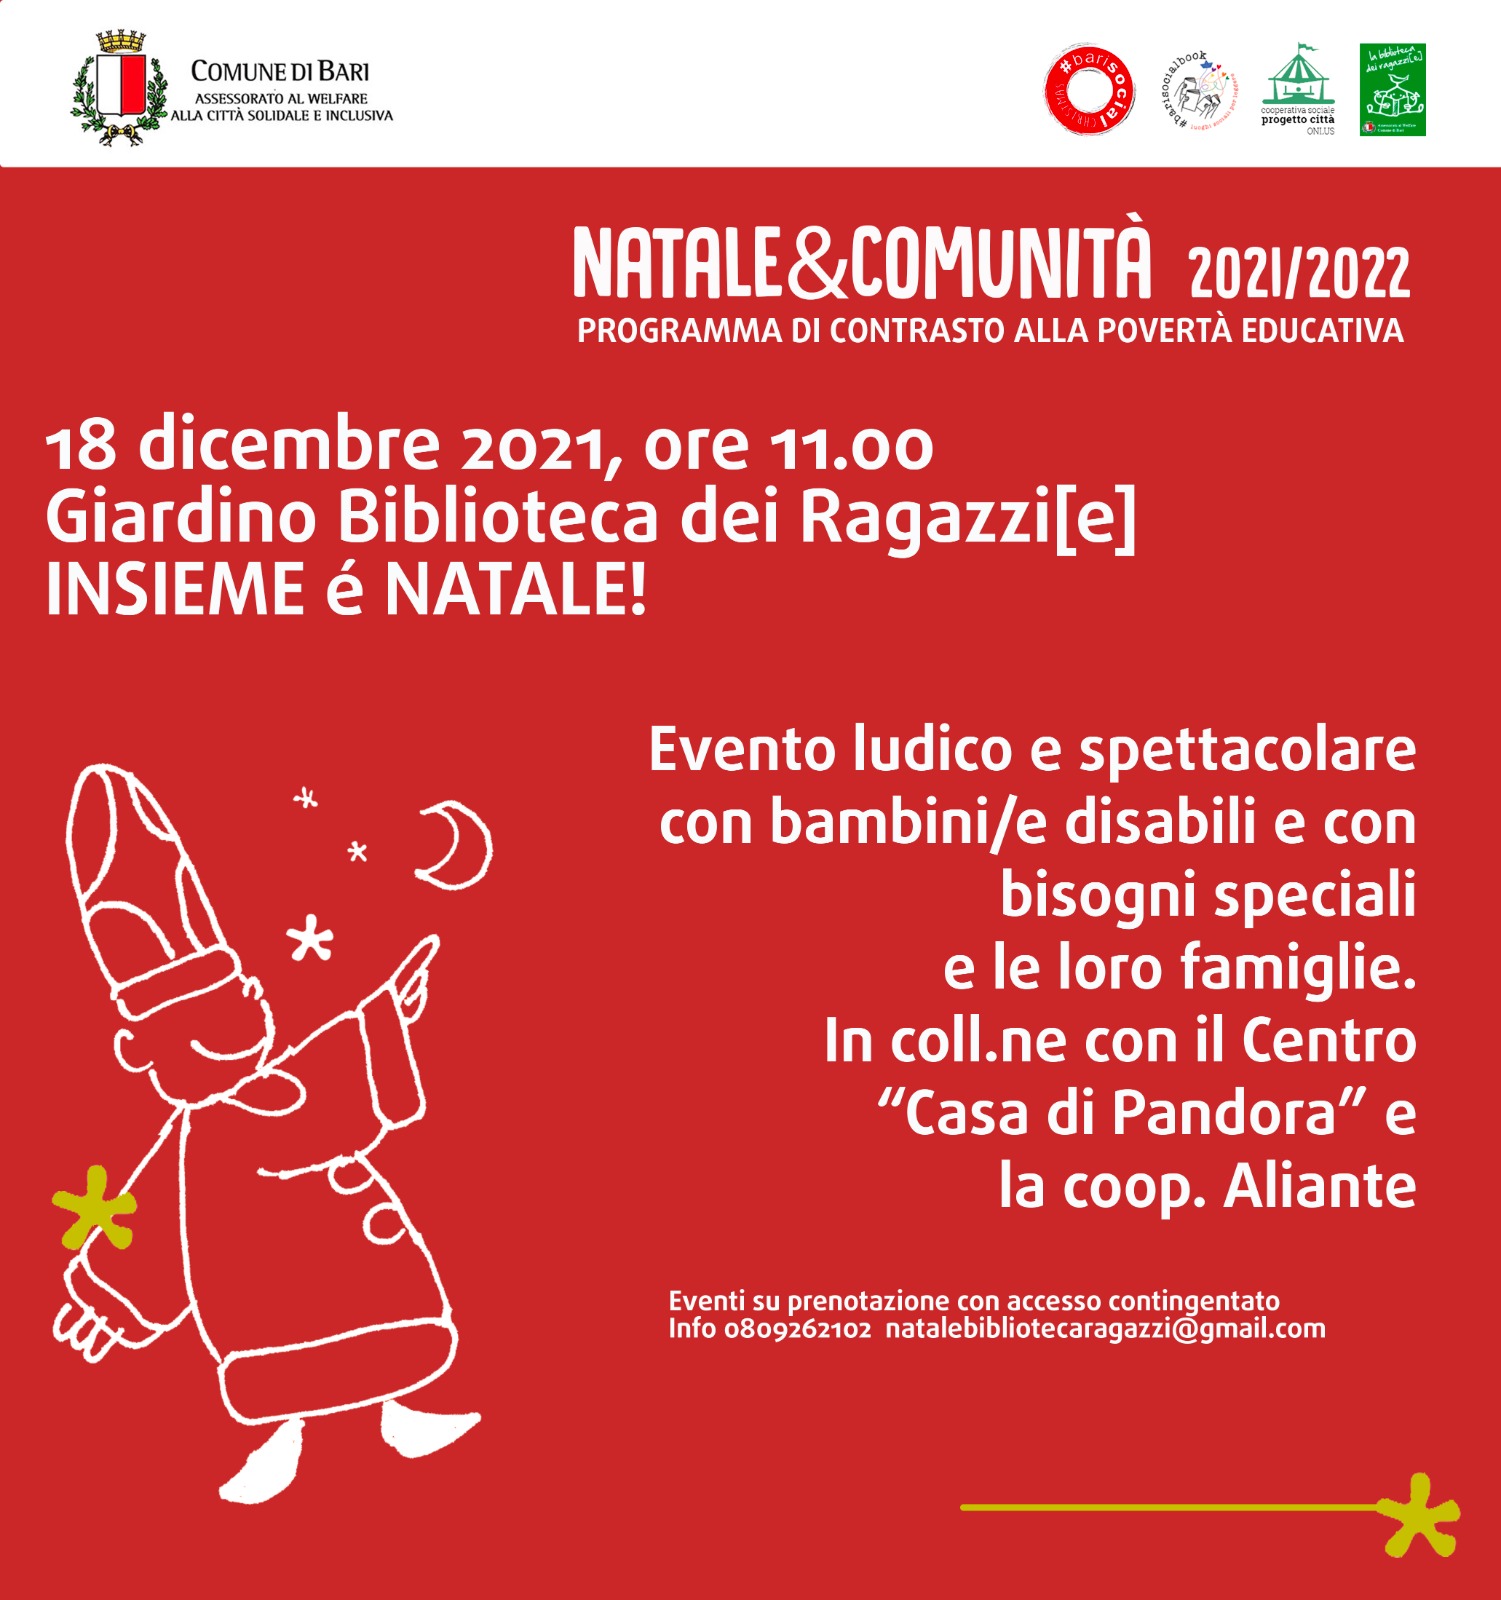 Bari: "Natale di Comunità", le iniziative e gli eventi solidali, ludici e creativi organizzati dal comune per le festività